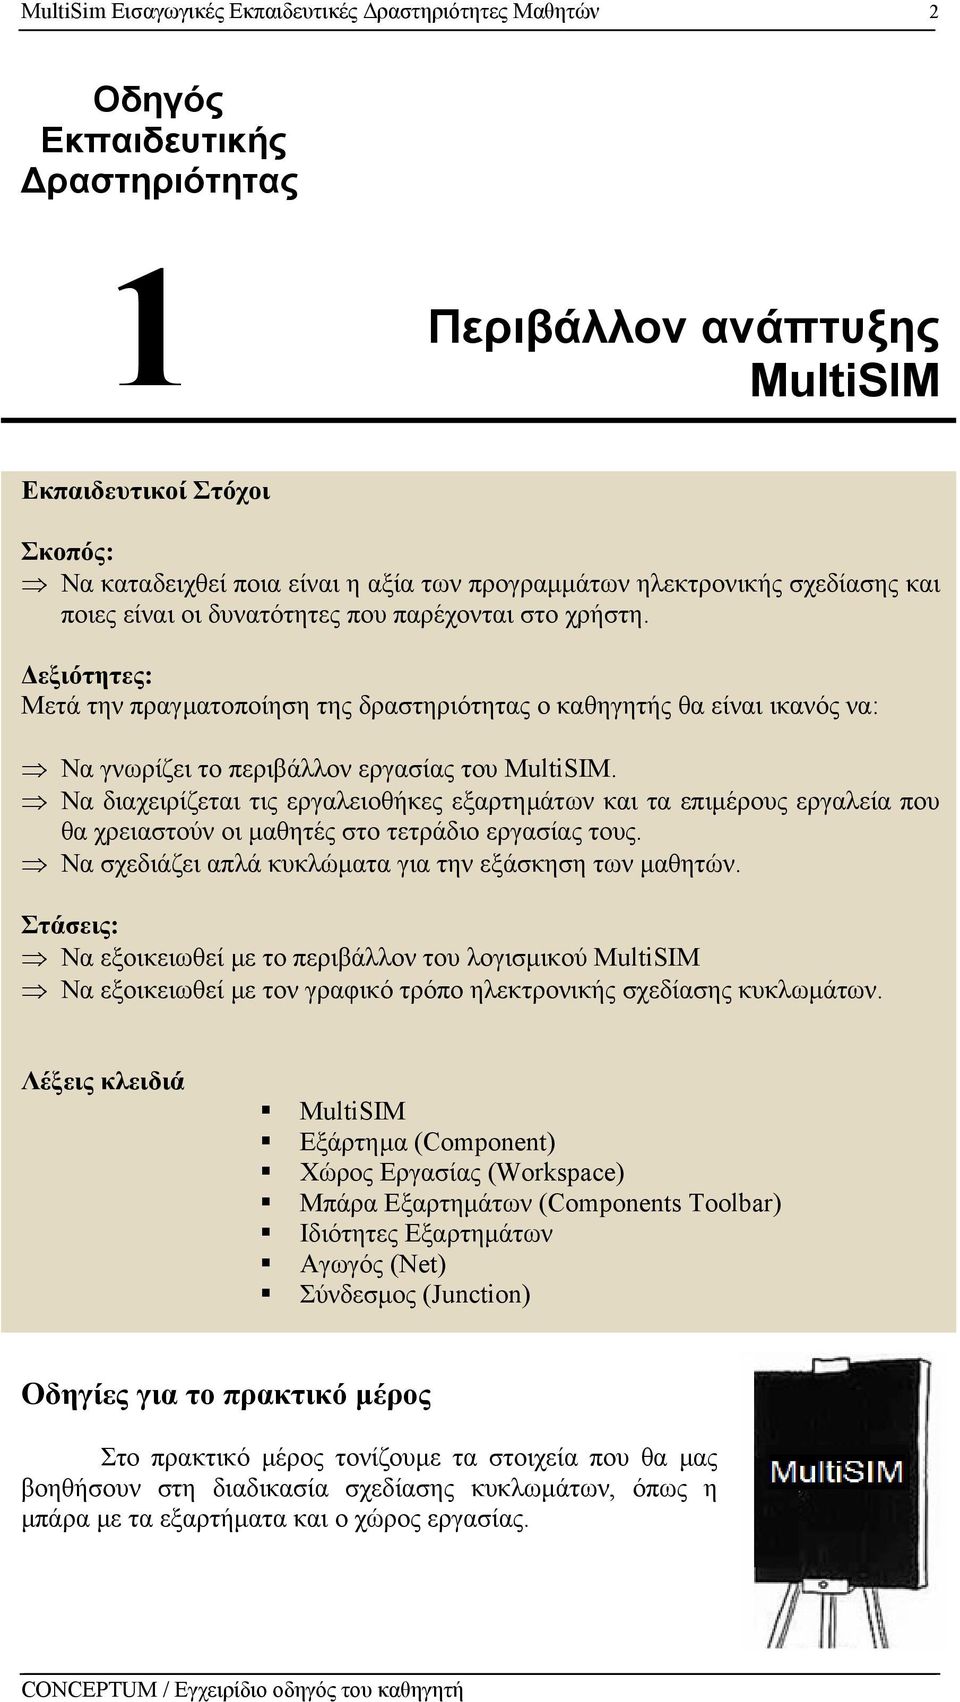 εξιότητες: Μετά την πραγµατοποίηση της δραστηριότητας o καθηγητής θα είναι ικανός να: Να γνωρίζει το περιβάλλον εργασίας του MultiSIM.